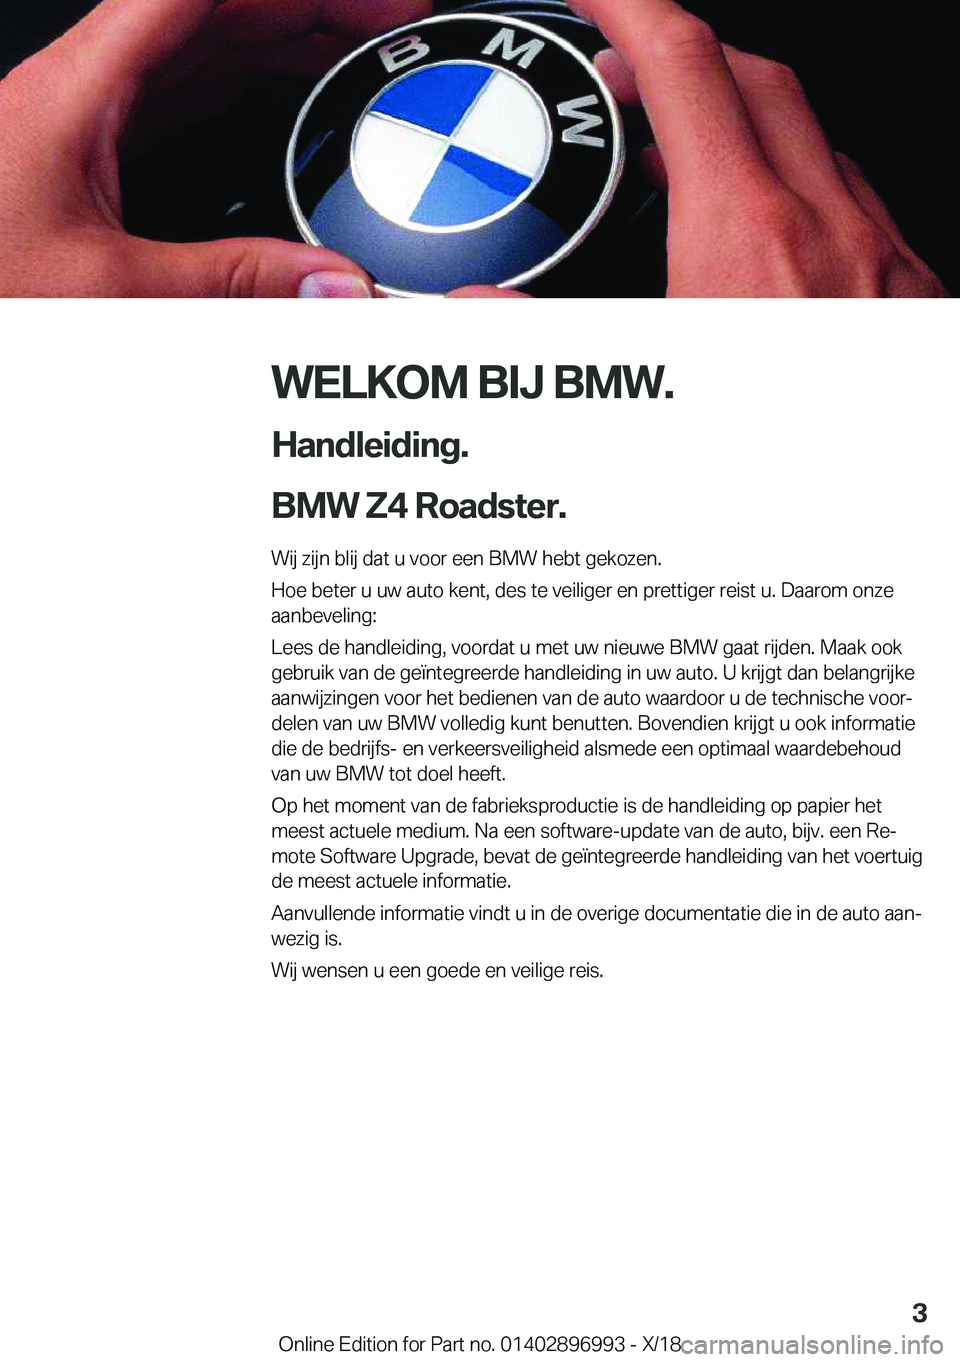 BMW Z4 2019  Instructieboekjes (in Dutch) �W�E�L�K�O�M��B�I�J��B�M�W�.
�H�a�n�d�l�e�i�d�i�n�g�.
�B�M�W��Z�4��R�o�a�d�s�t�e�r�. �W�i�j��z�i�j�n��b�l�i�j��d�a�t��u��v�o�o�r��e�e�n��B�M�W��h�e�b�t��g�e�k�o�z�e�n�.�H�o�e��b�e�t�e�r�